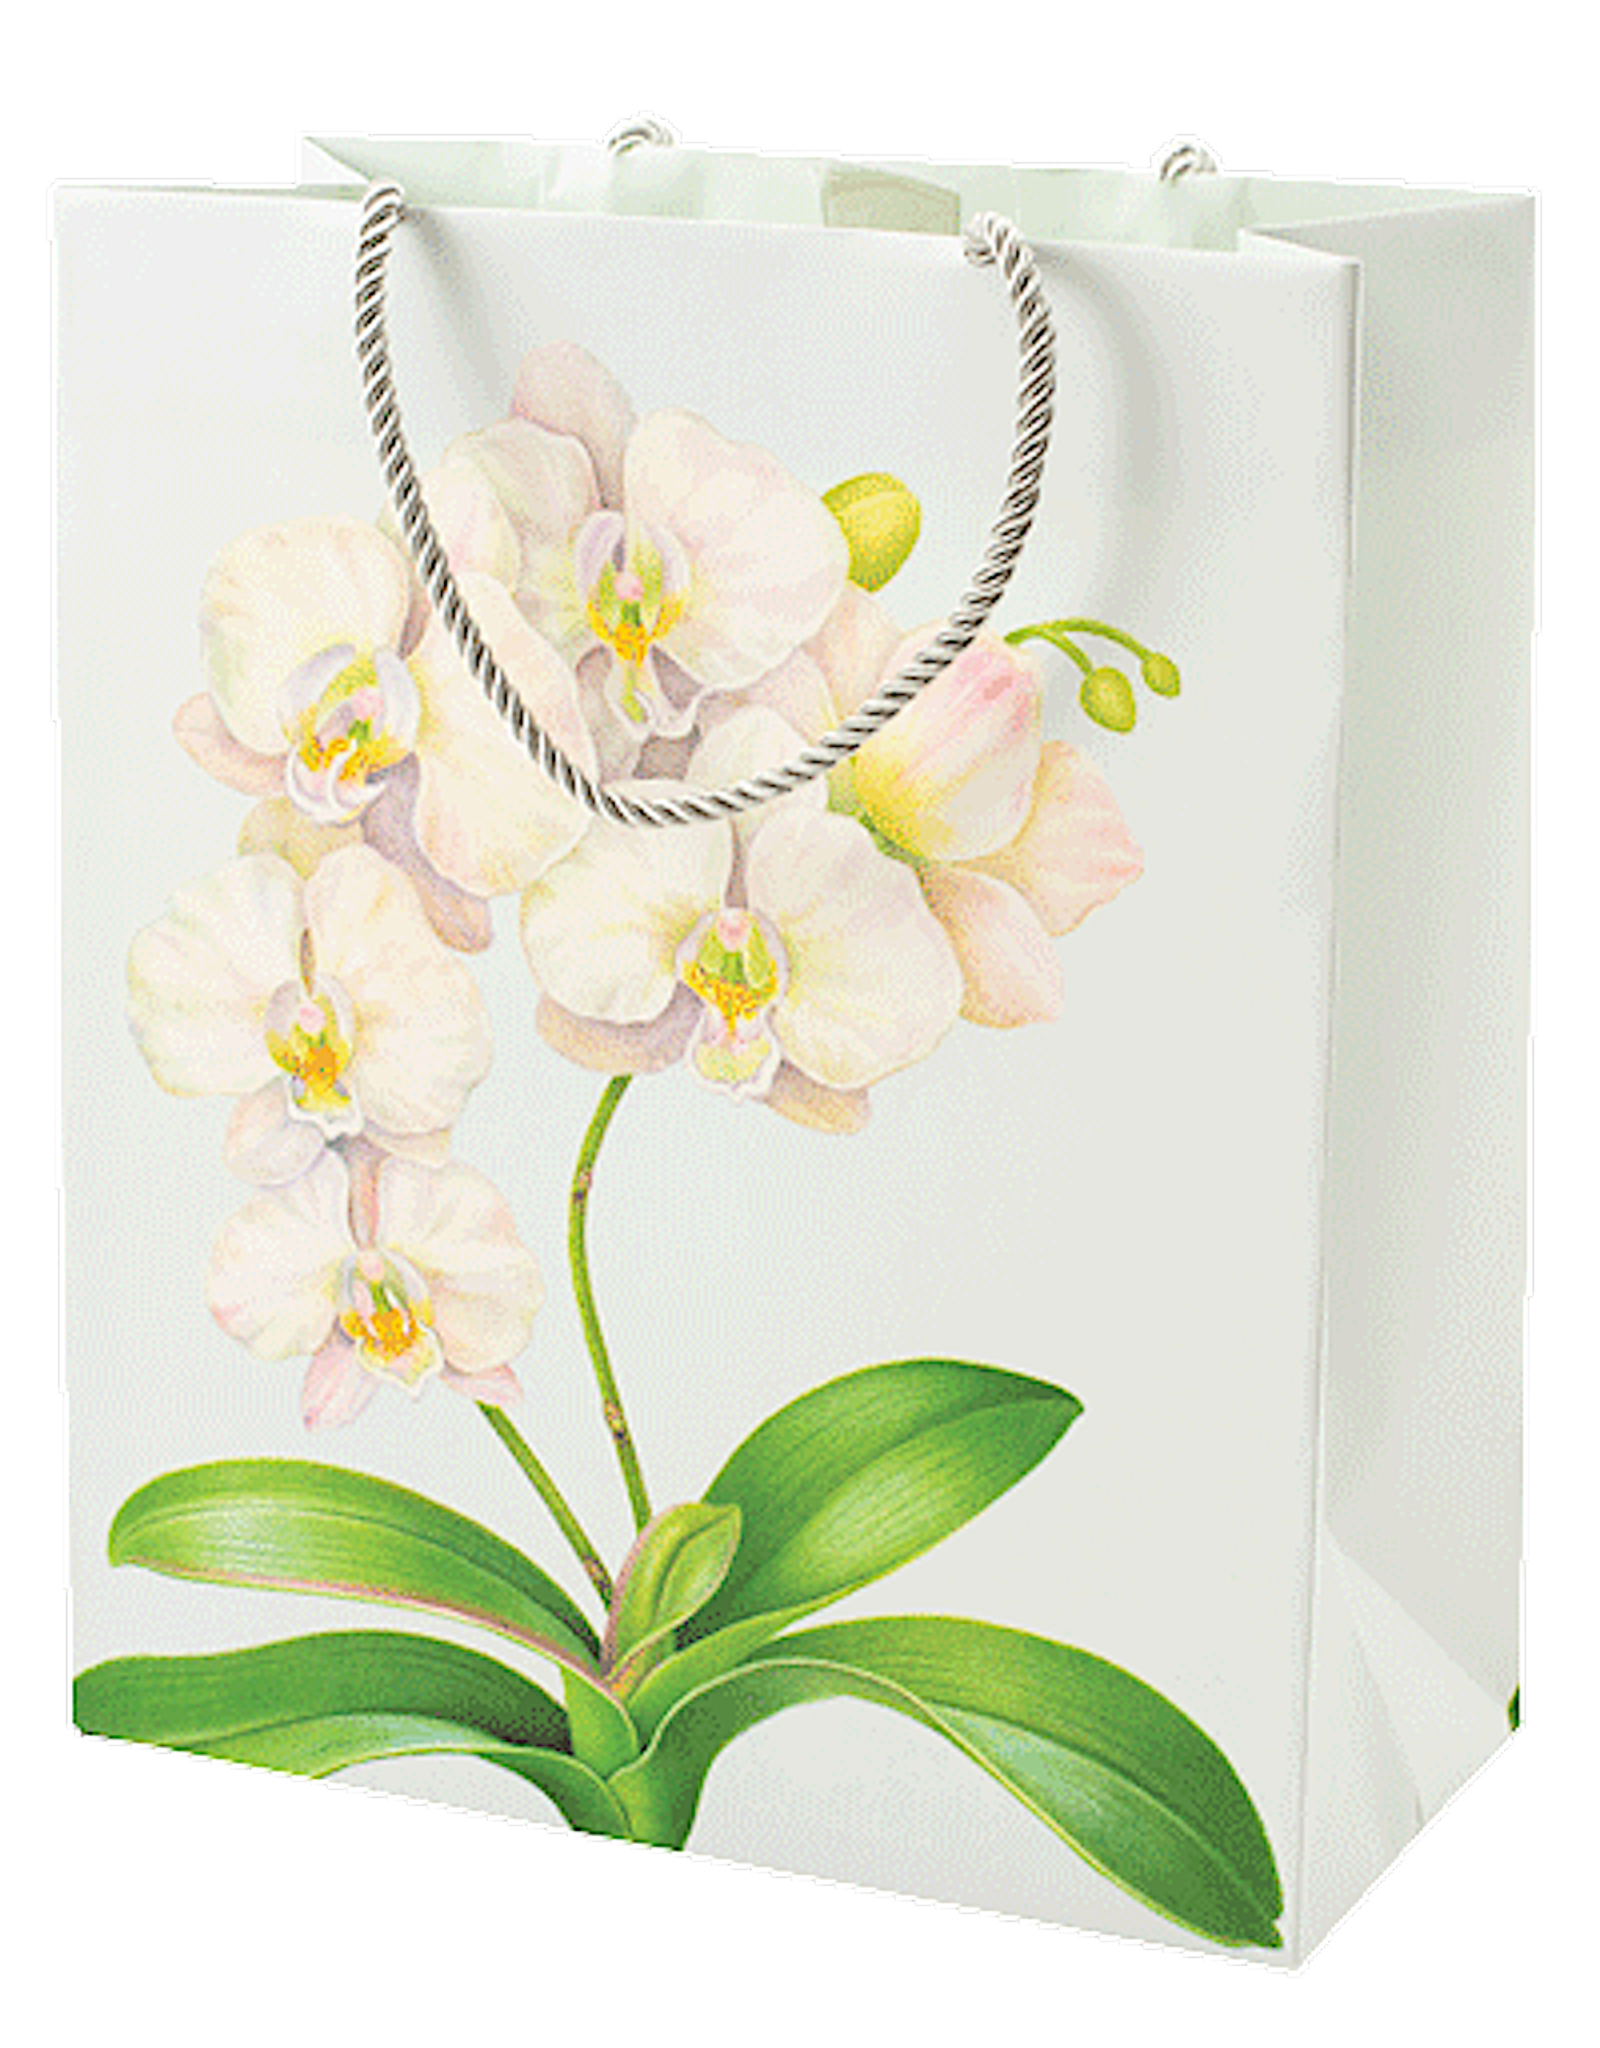 Caspari Gift Bag Lg 11.75x4.75x10 White Orchid